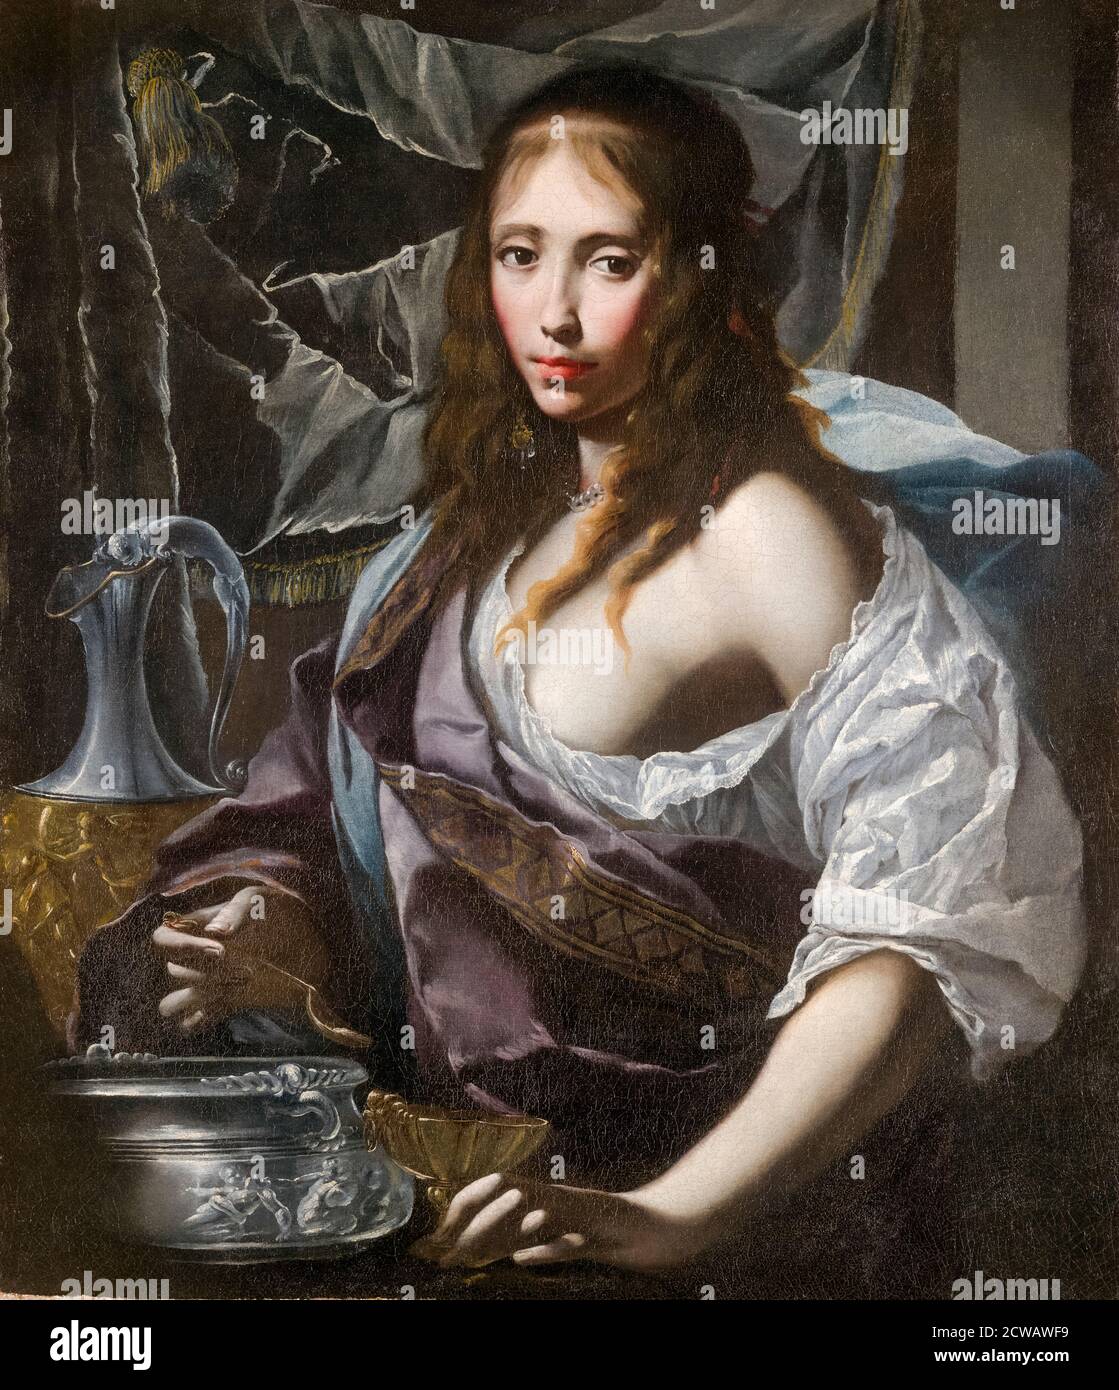 Artemisia se prépare à boire les cendres de son mari Mausolus, peinture de Francesco Furini, vers 1630 Banque D'Images